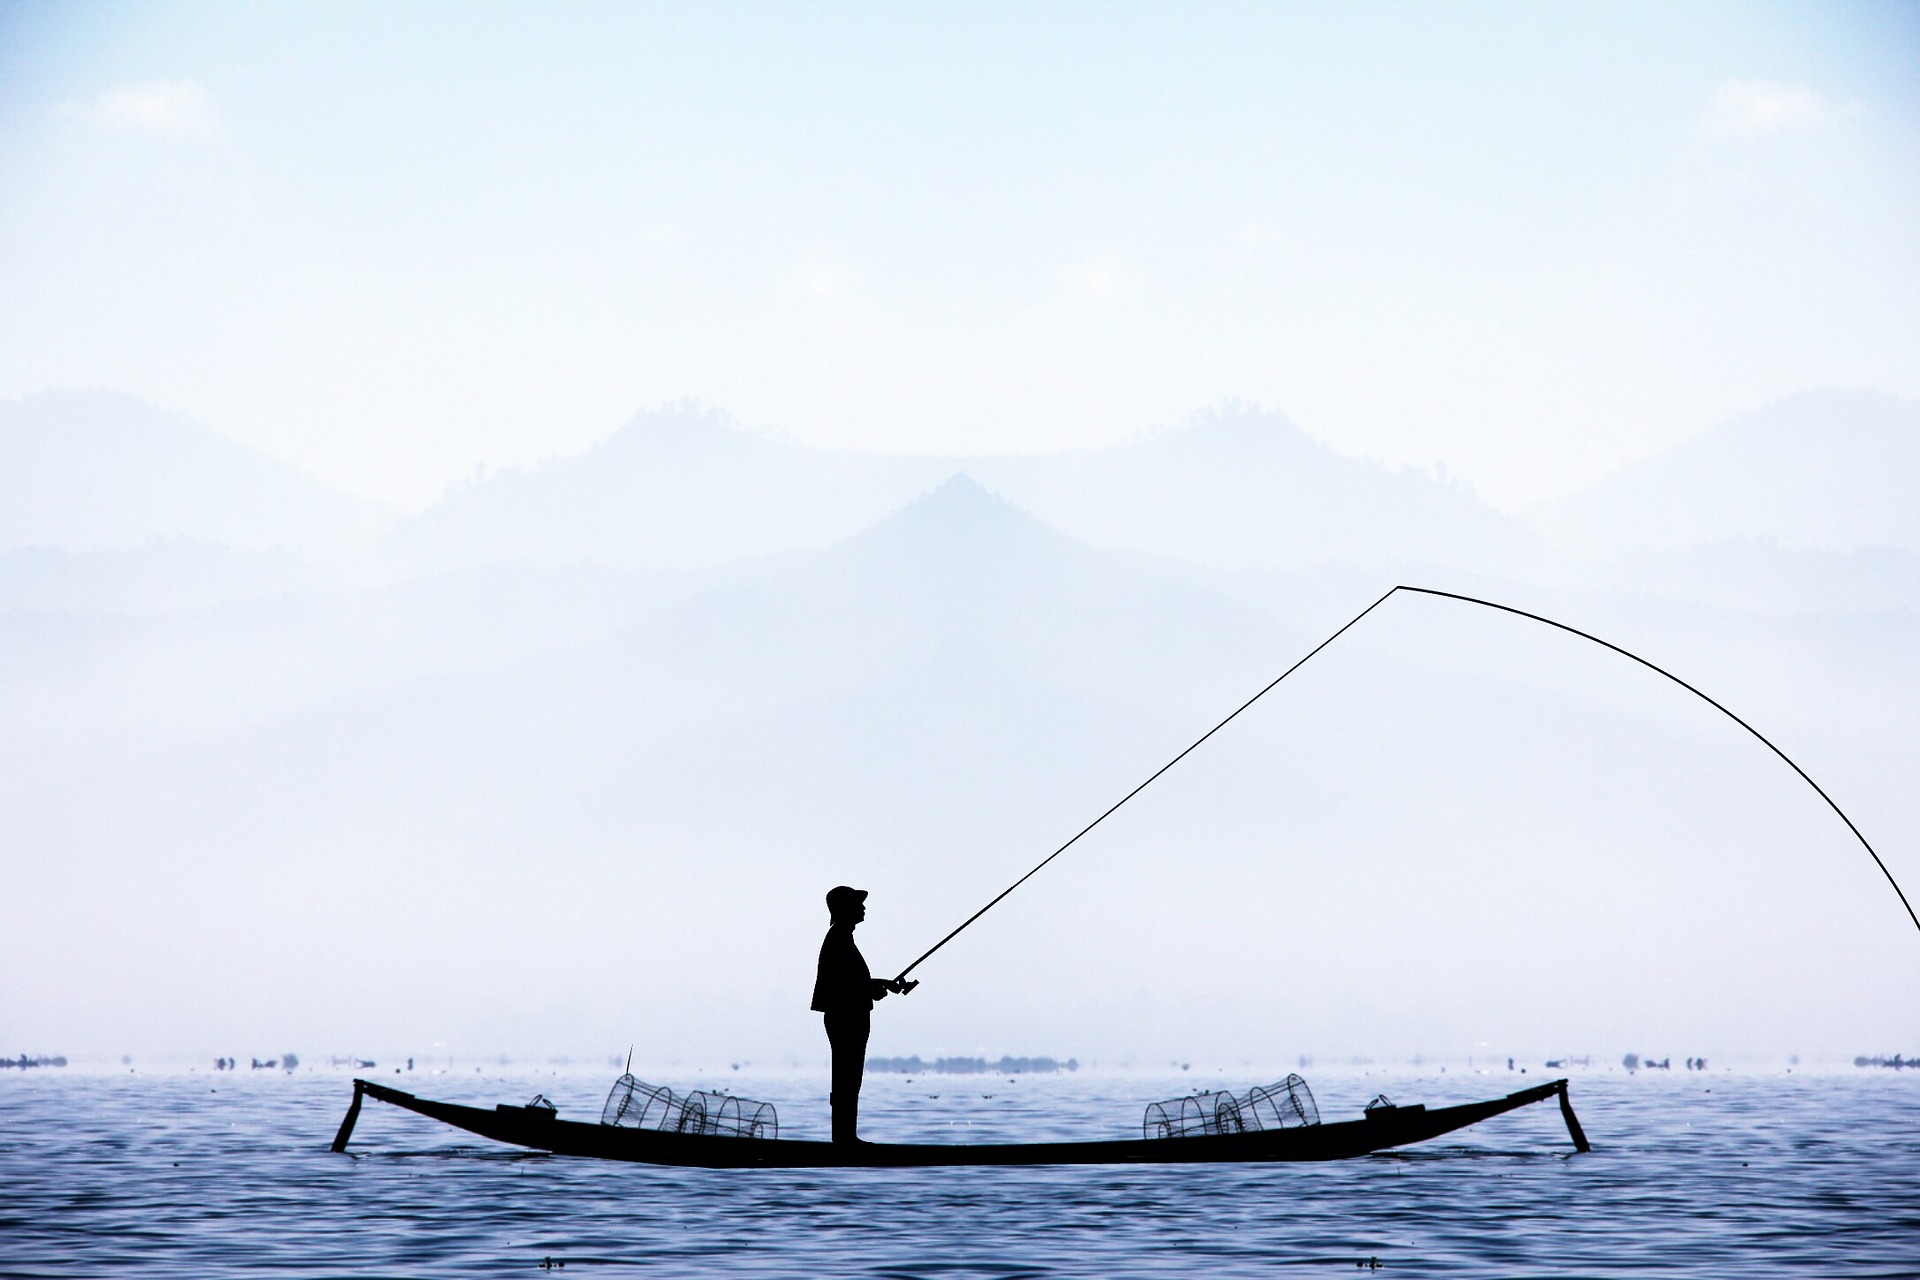 海釣り攻略ガイド 釣れる魚は大物確定 ロマンを求めて泳がせる アジの泳がせ釣り編 はなびしきアウトドア術